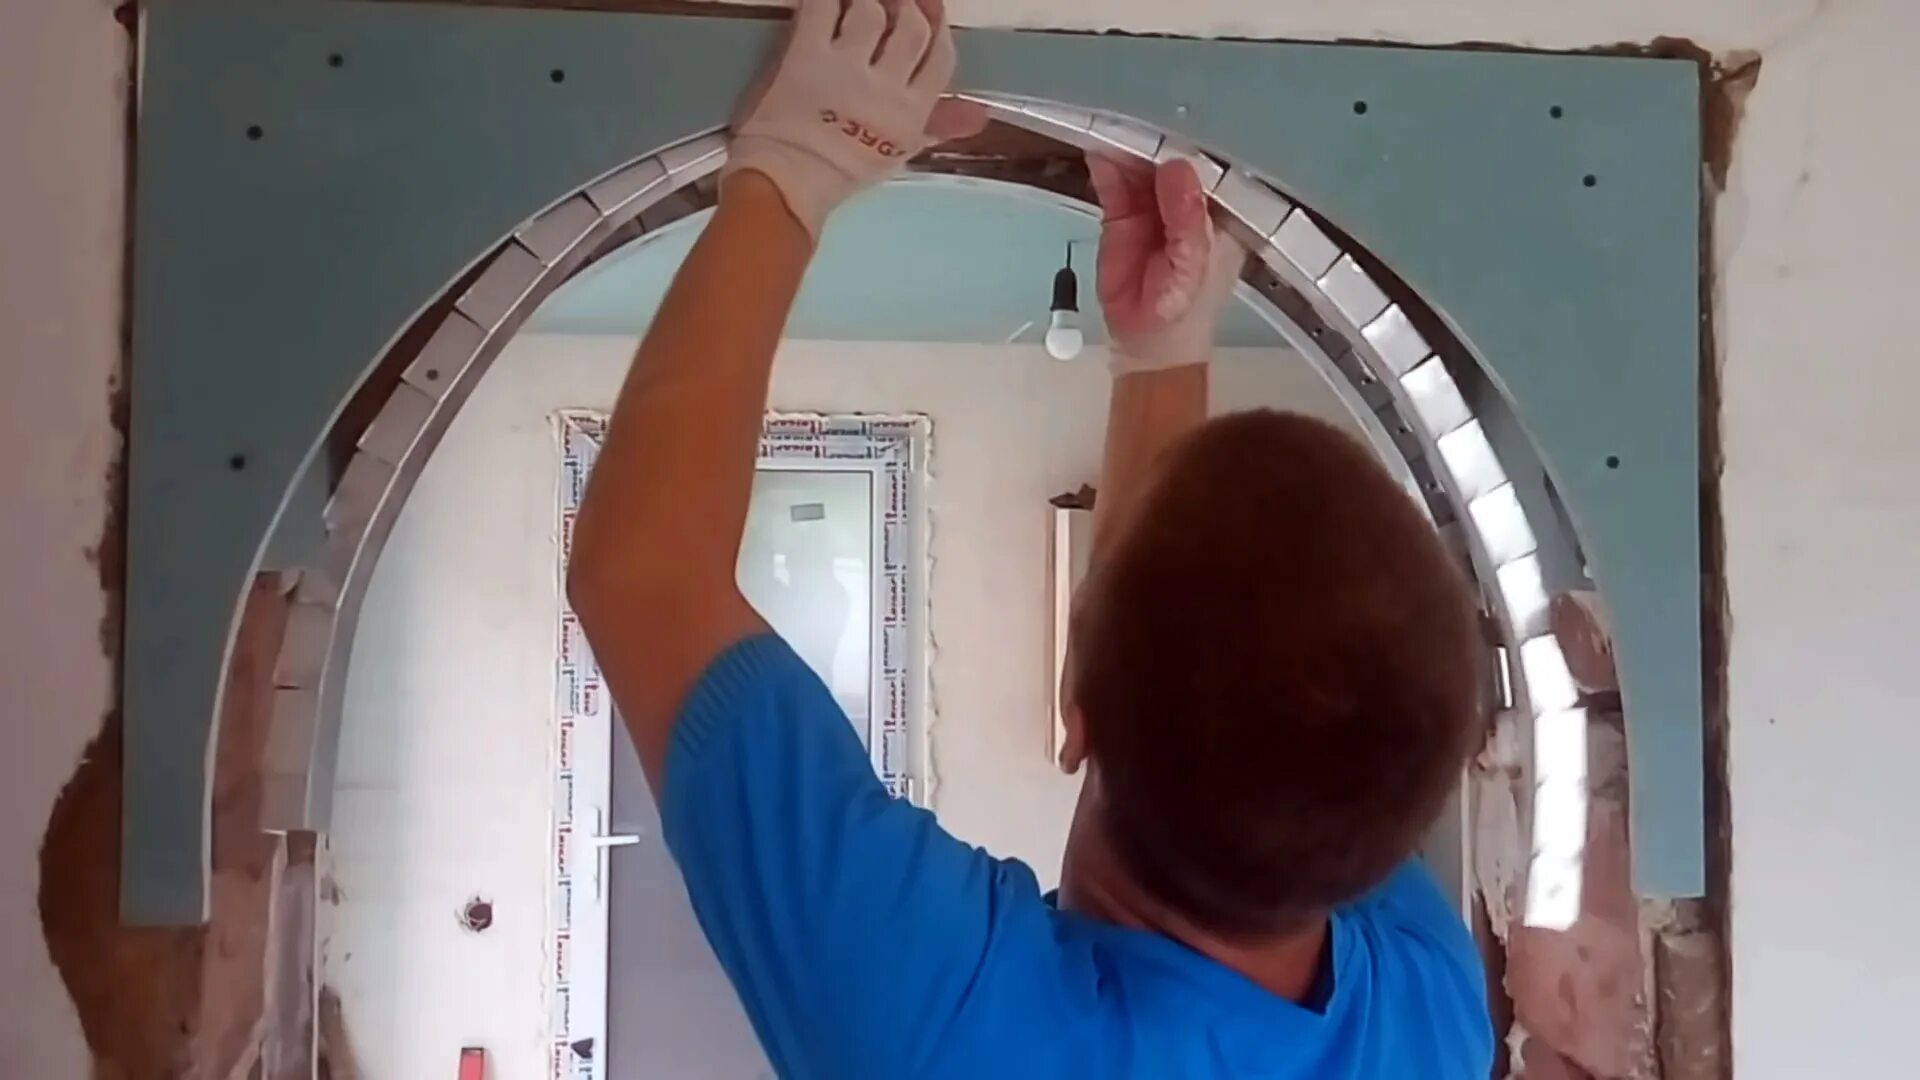 Как сделать арку из гипсокартона в дверном